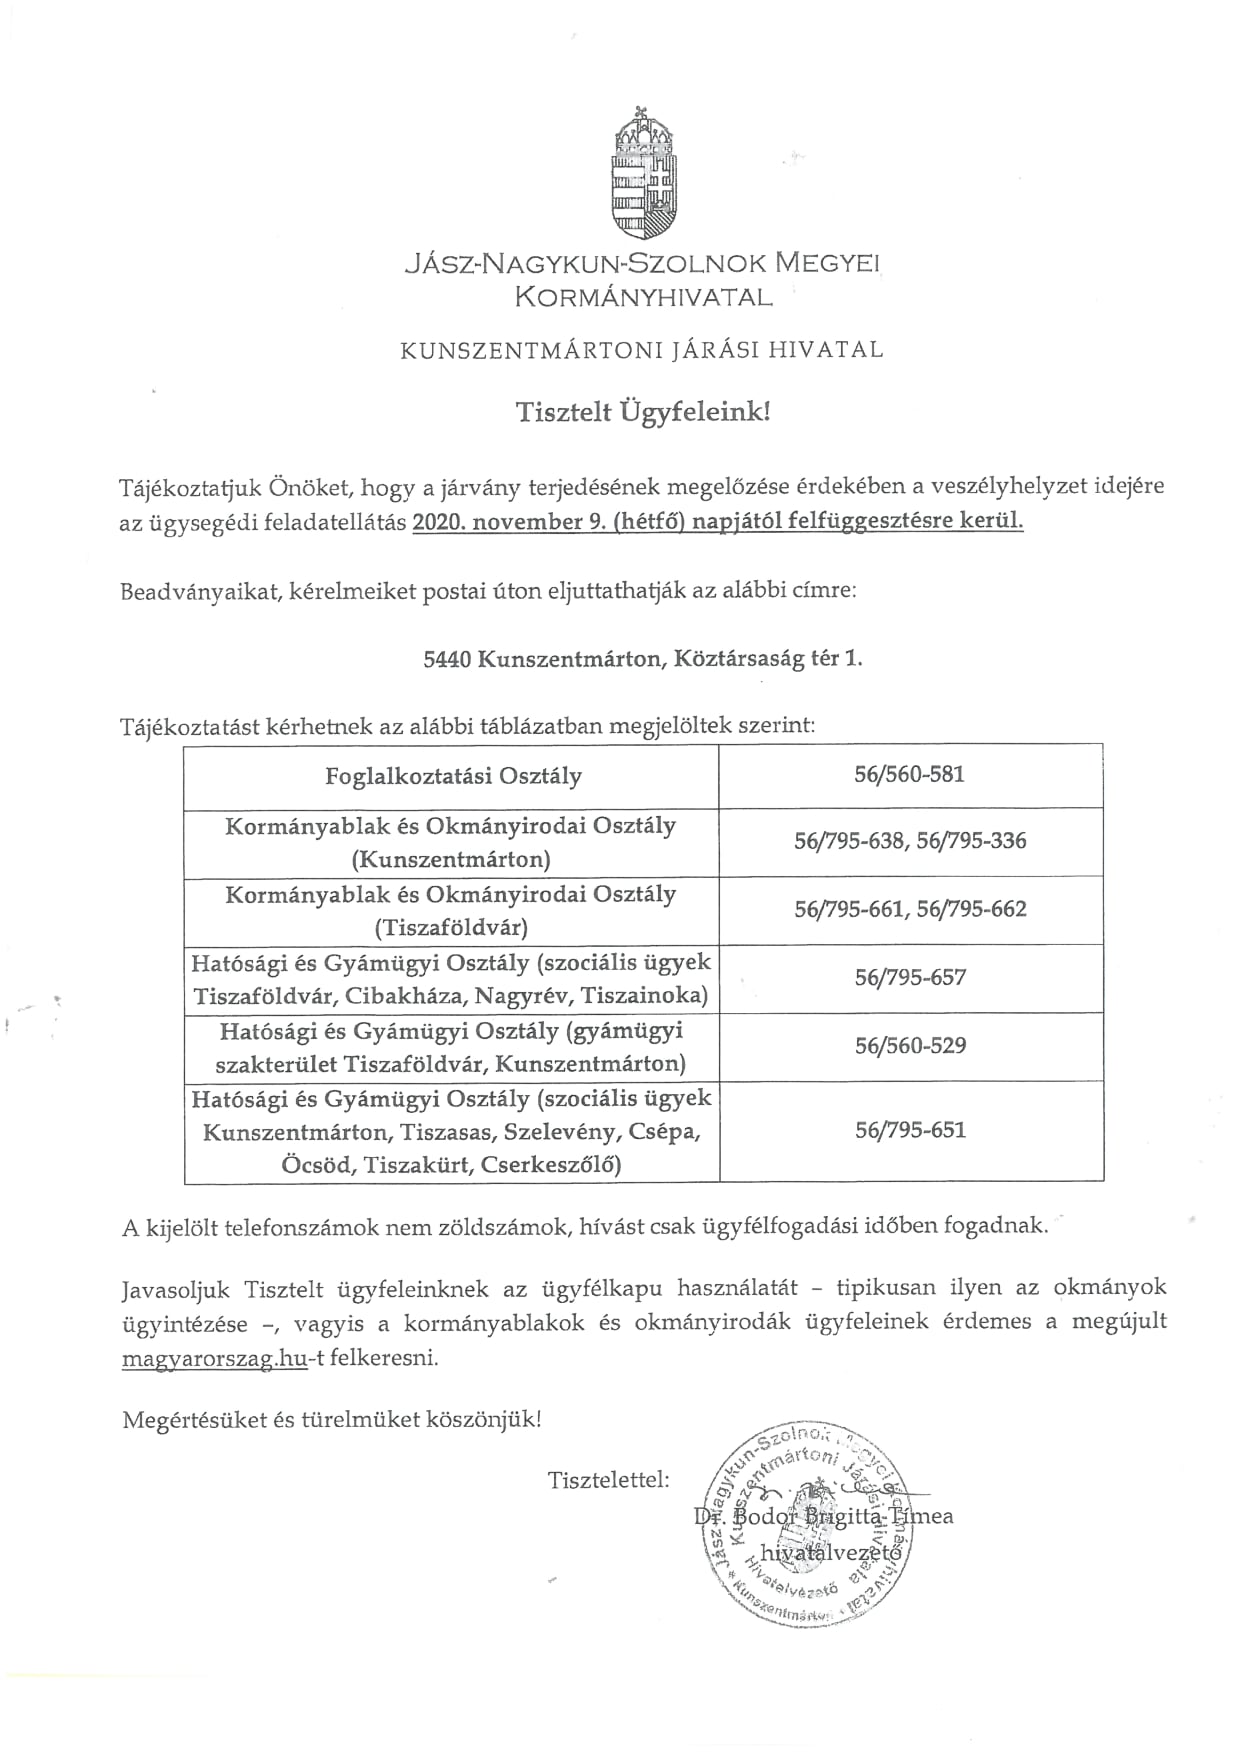 Tájékoztató a Kunszentmártoni Járási Hivatal ügysegédi feladatellátás felfüggesztéséről!